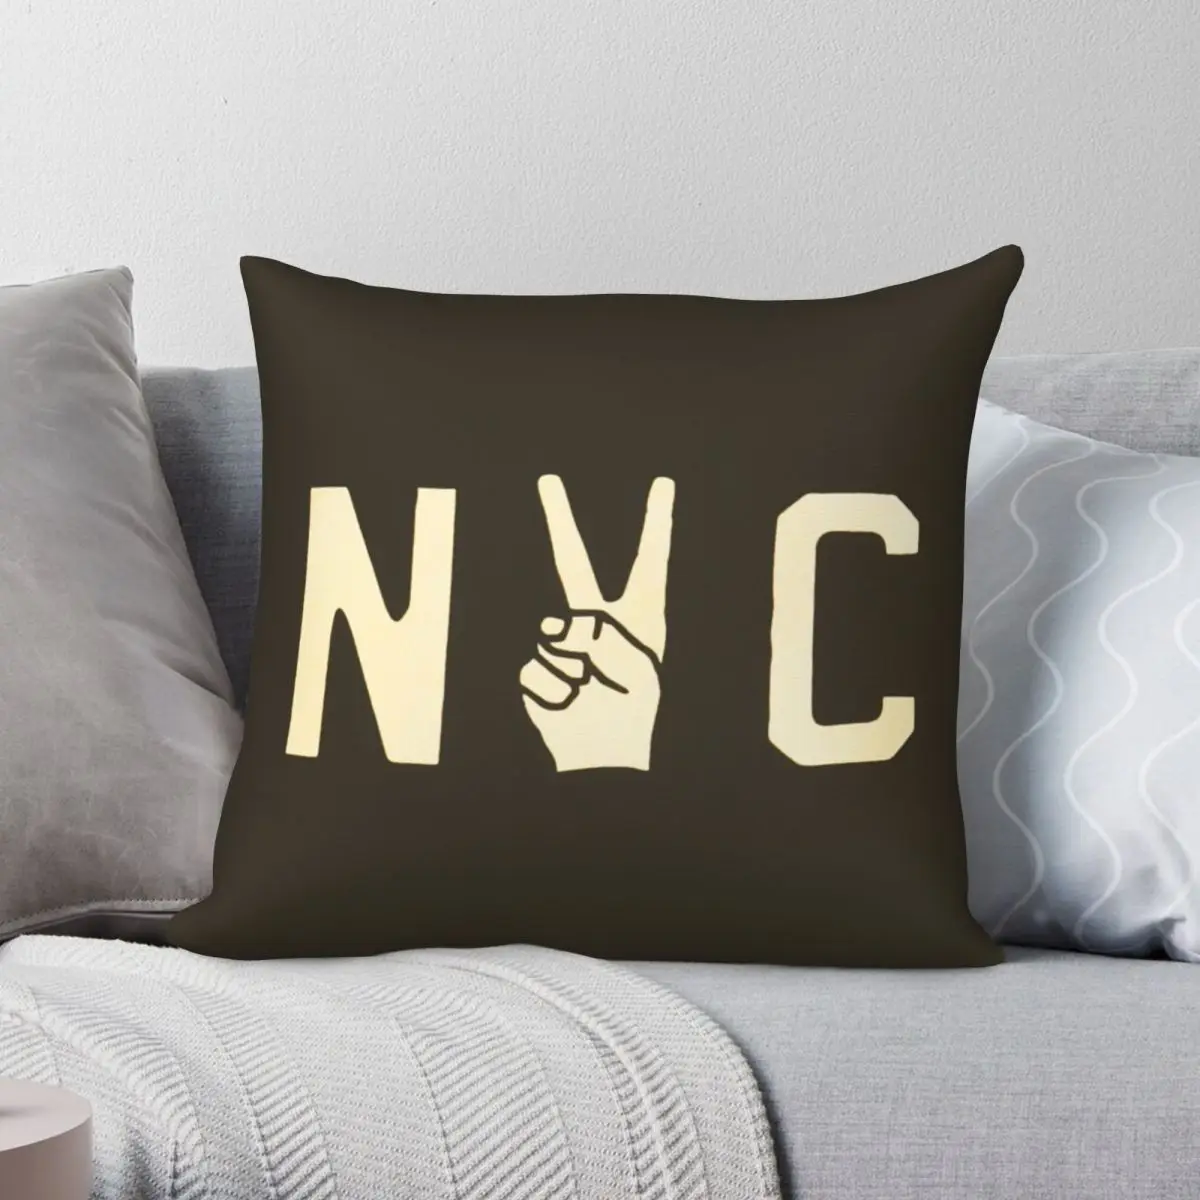 

Квадратная наволочка NYC с надписью Peace, наволочка из полиэстера и льна с бархатным узором, декоративная наволочка на диванную подушку